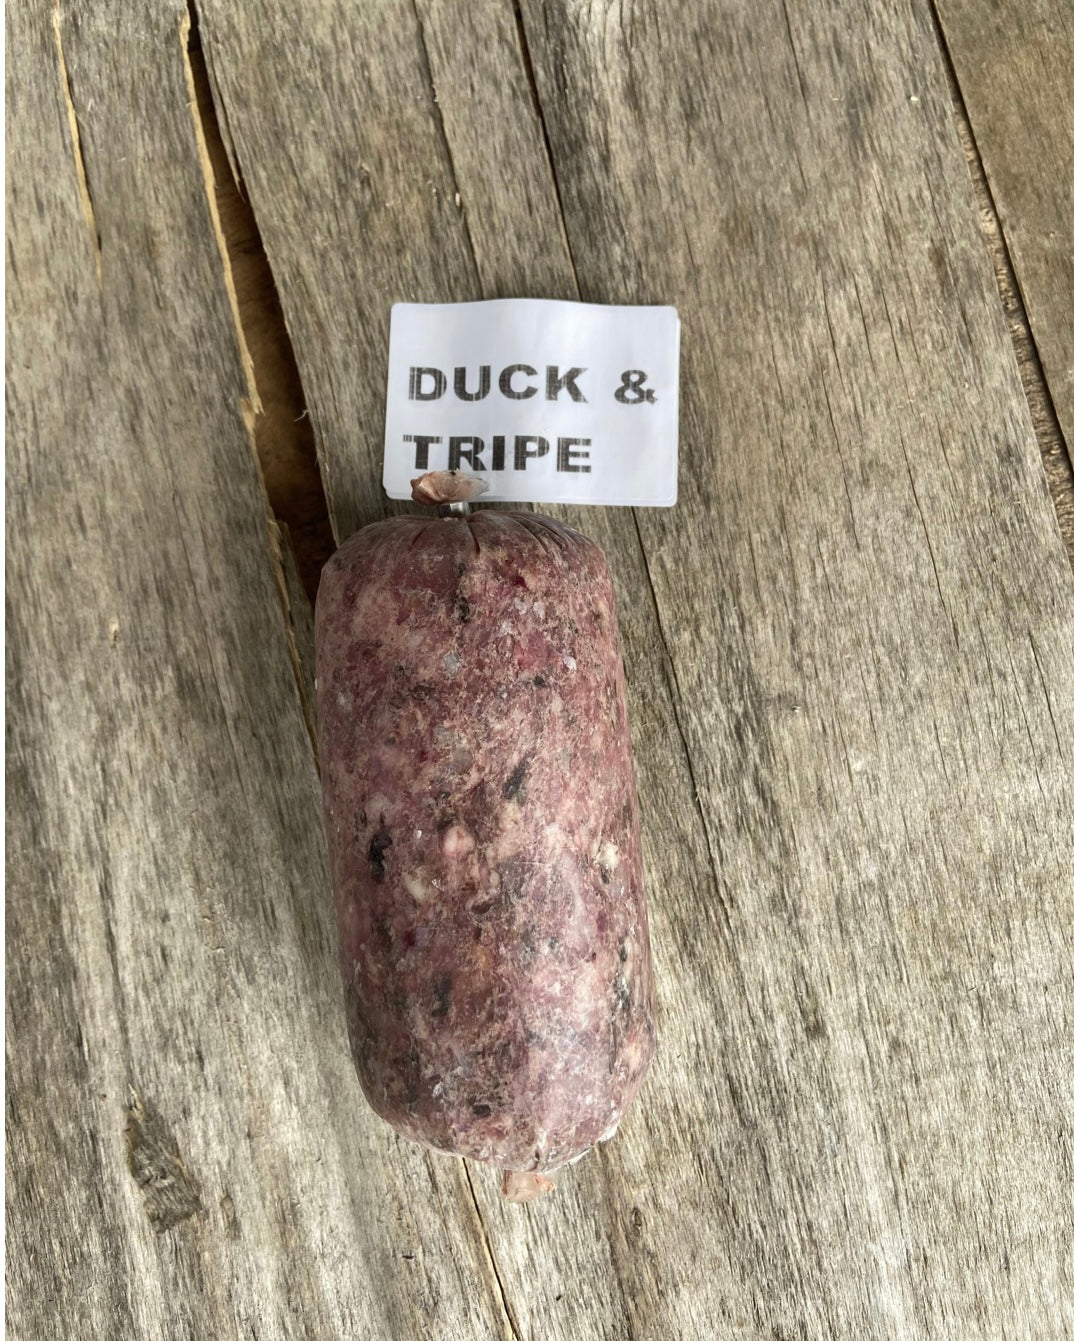 Duck & Tripe raw mince